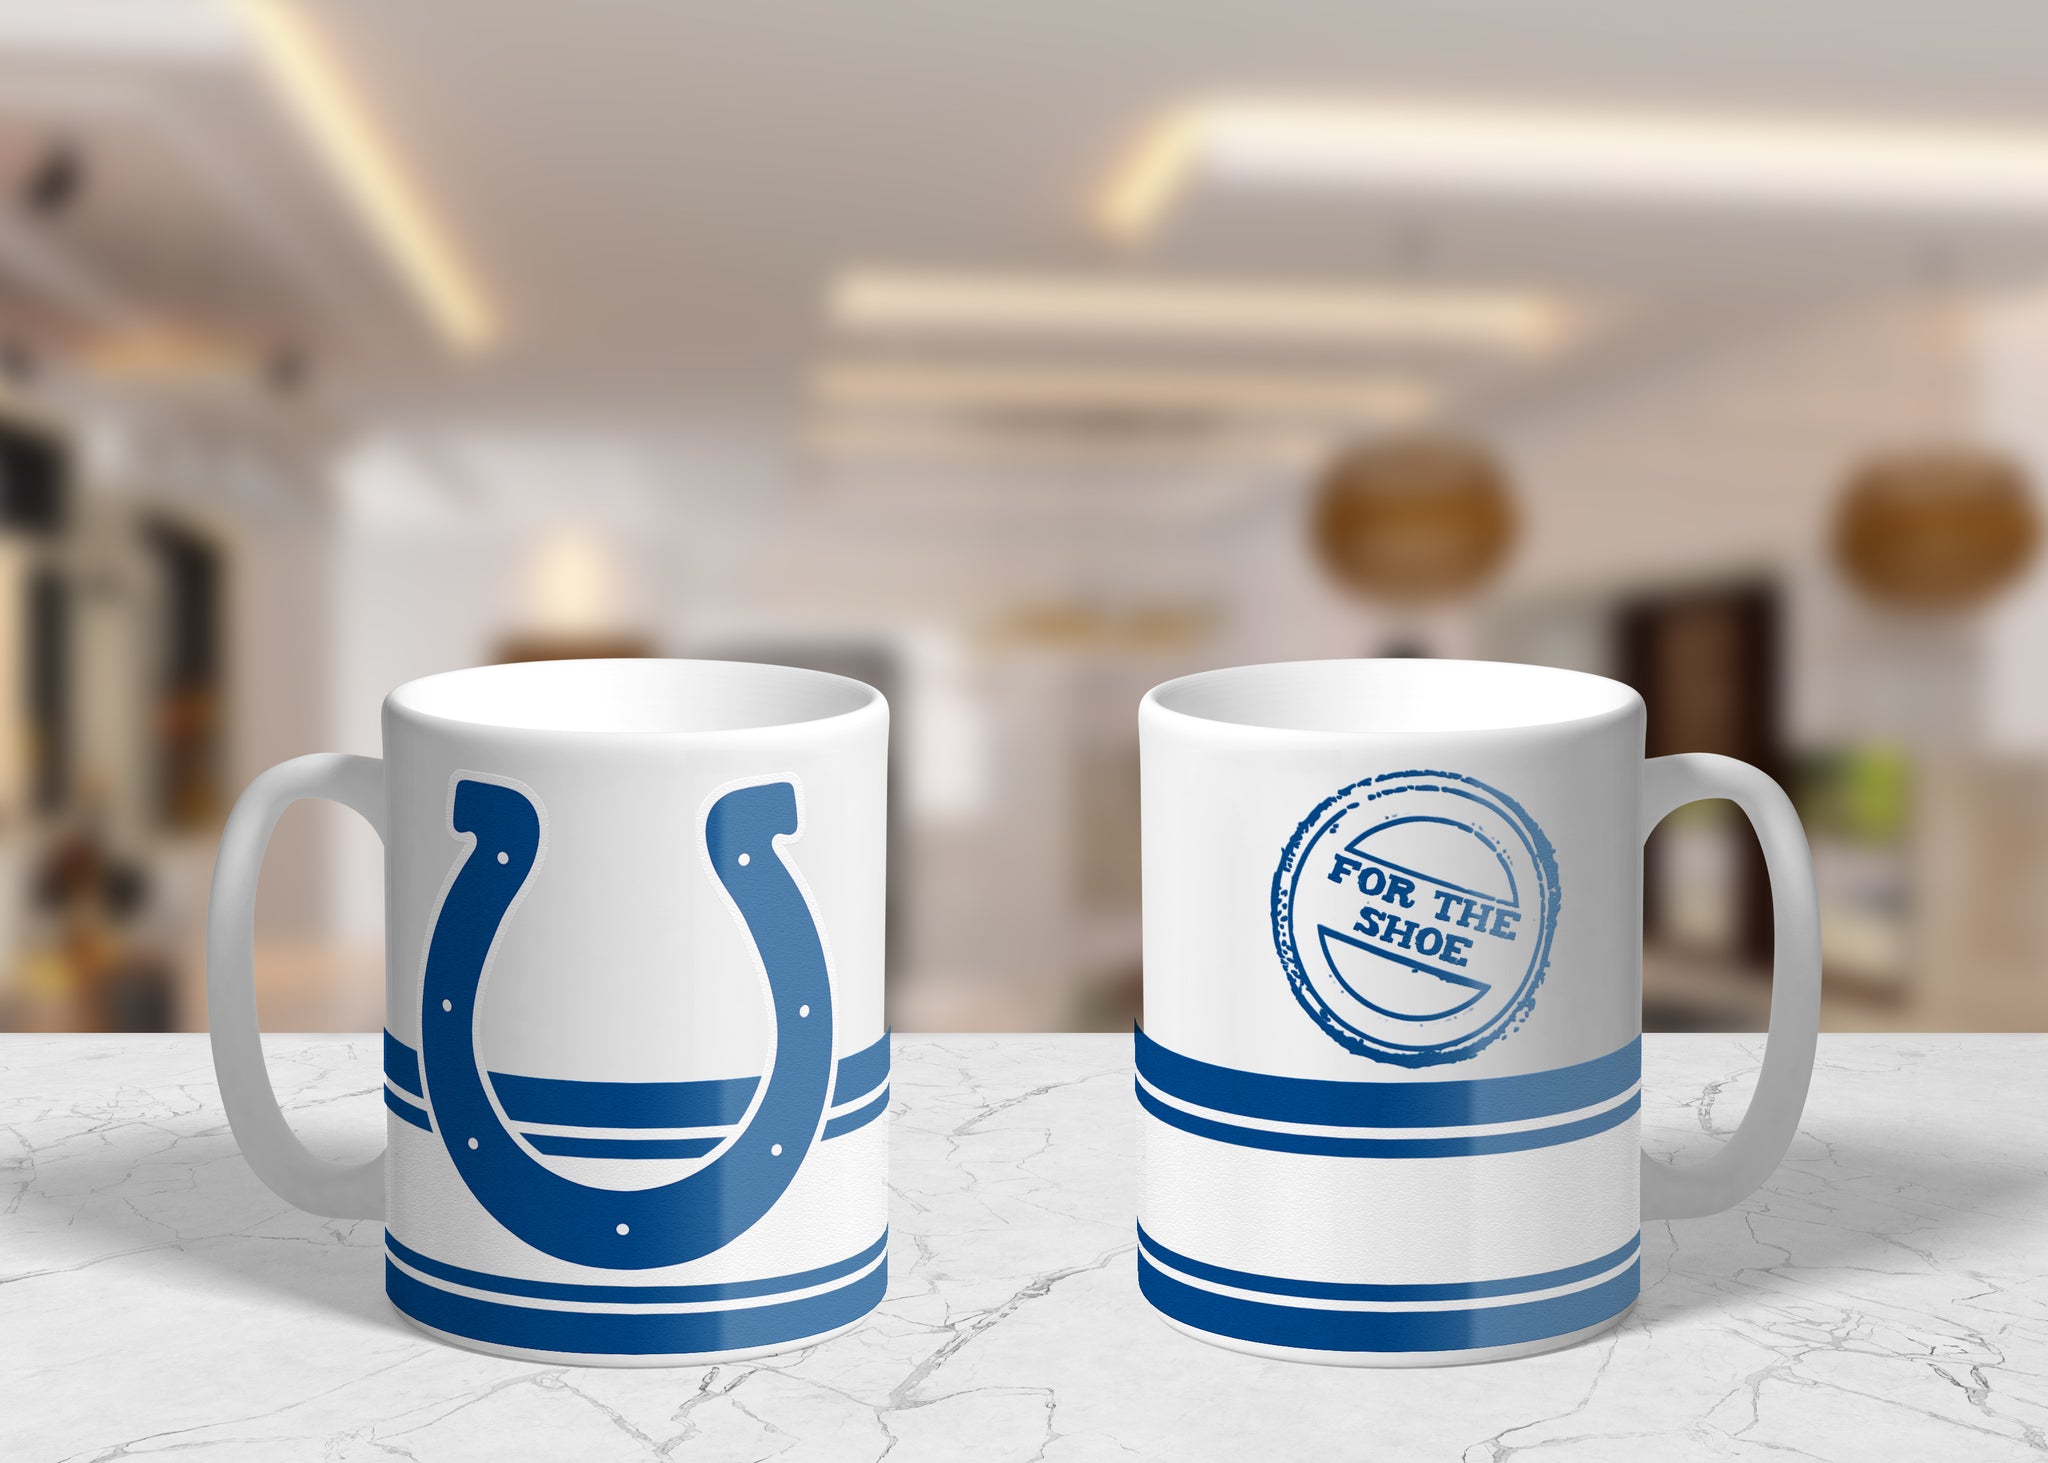 New England Patriots Sculpted Relief Coffee Mug